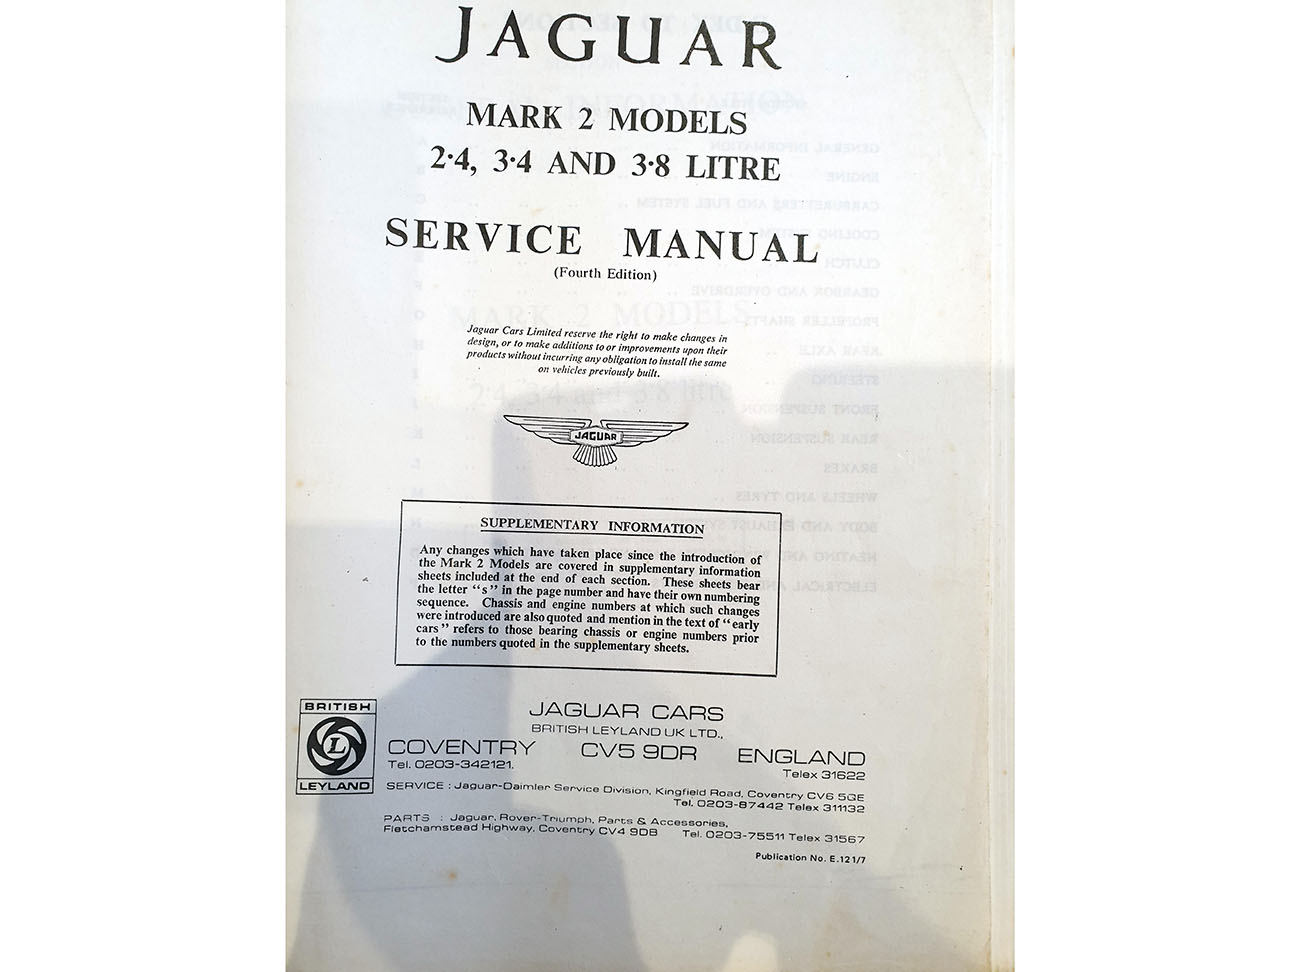 SERVICE MANUAL Jaguar Mk 2